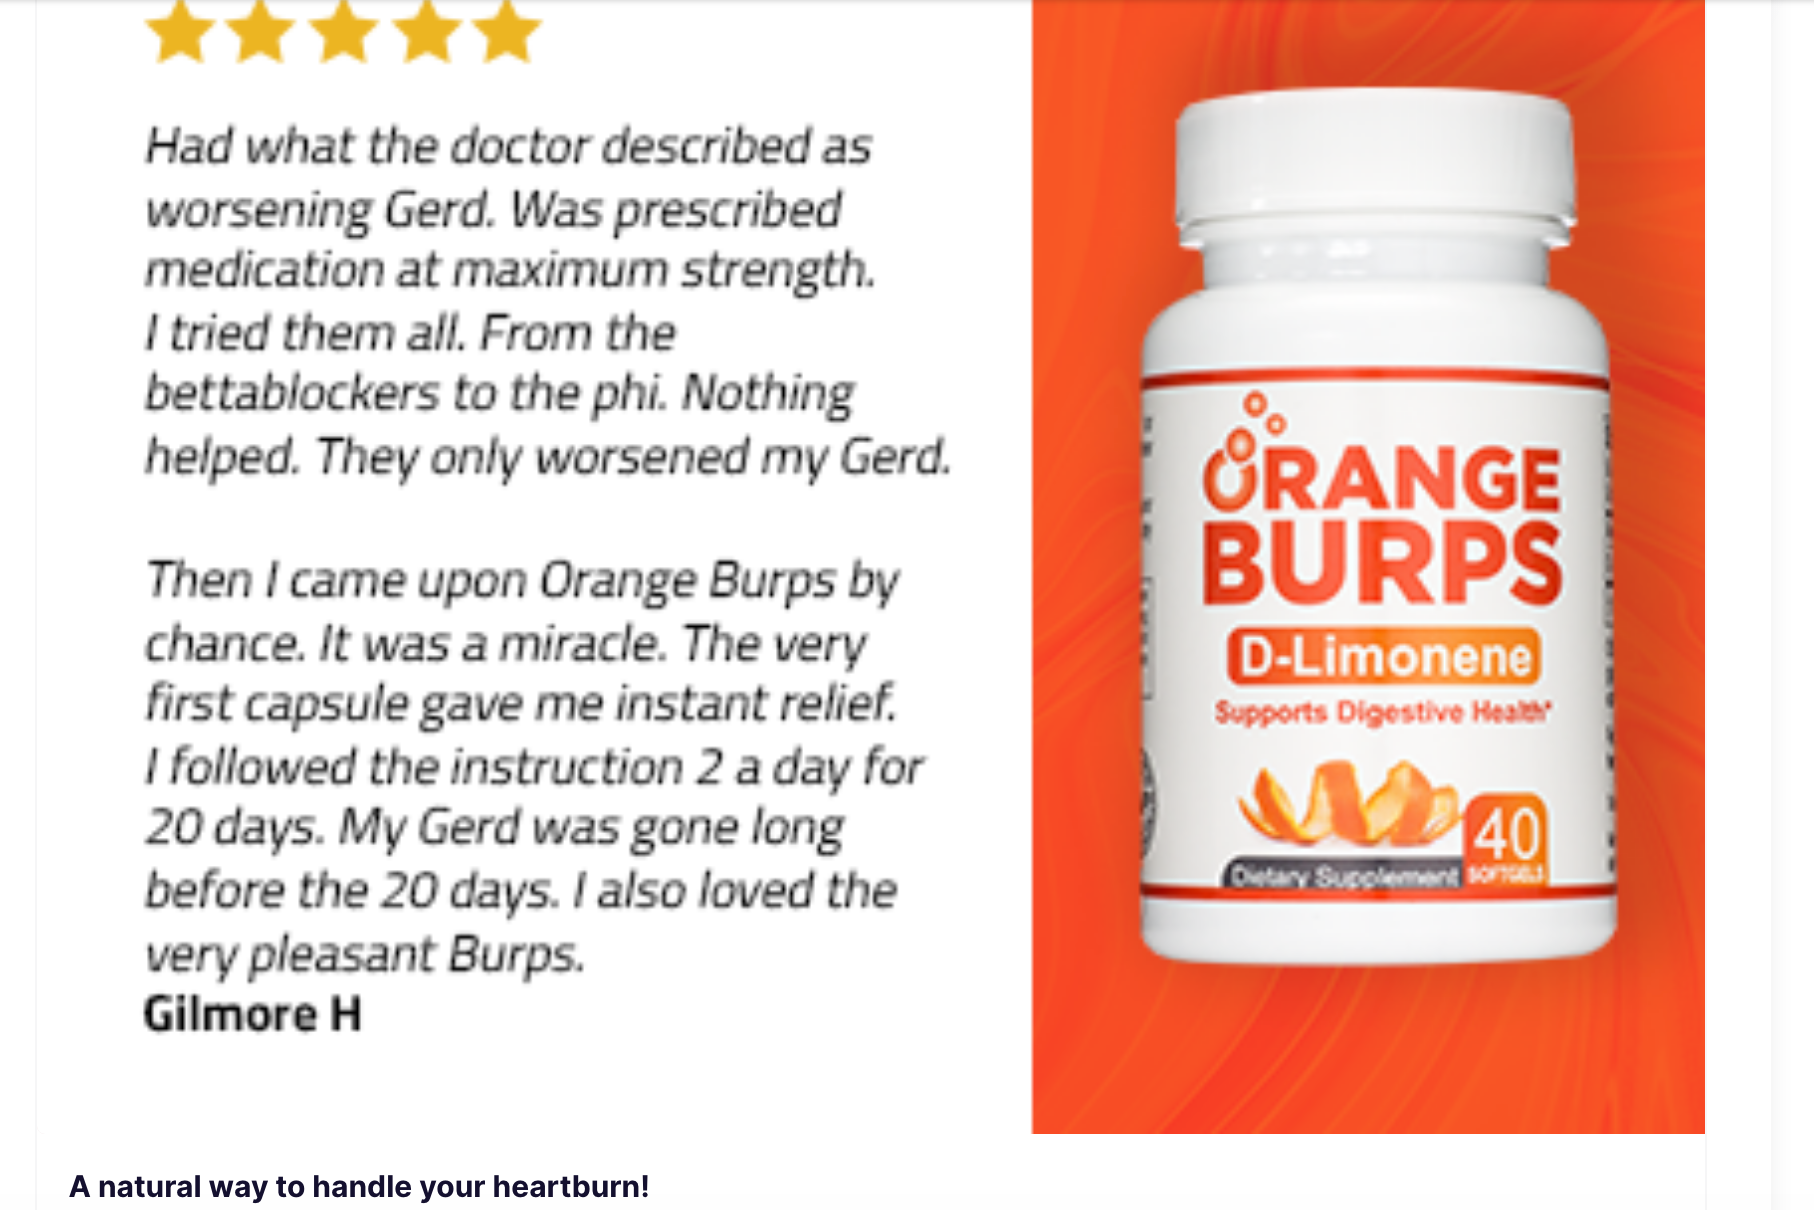 A digital ad for a medication called "Orange Burps"